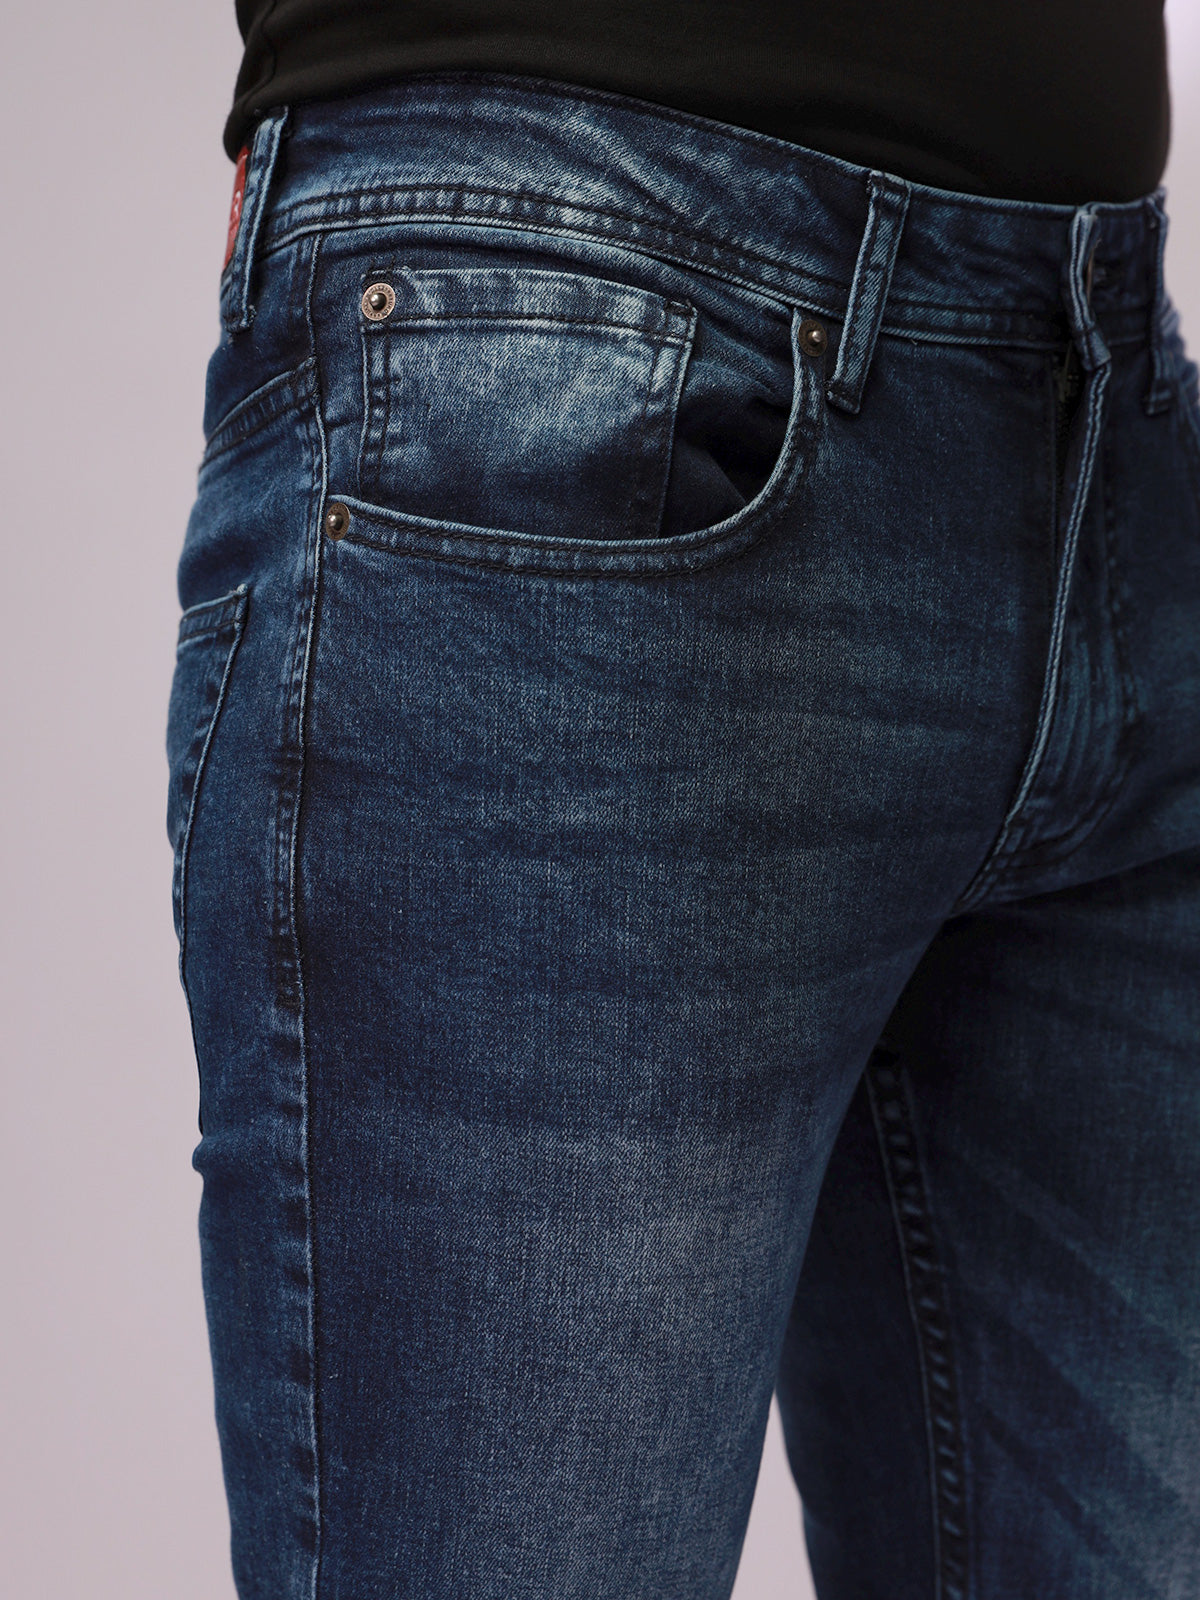 Men's Blue Denim Jeans - FMBP20-021